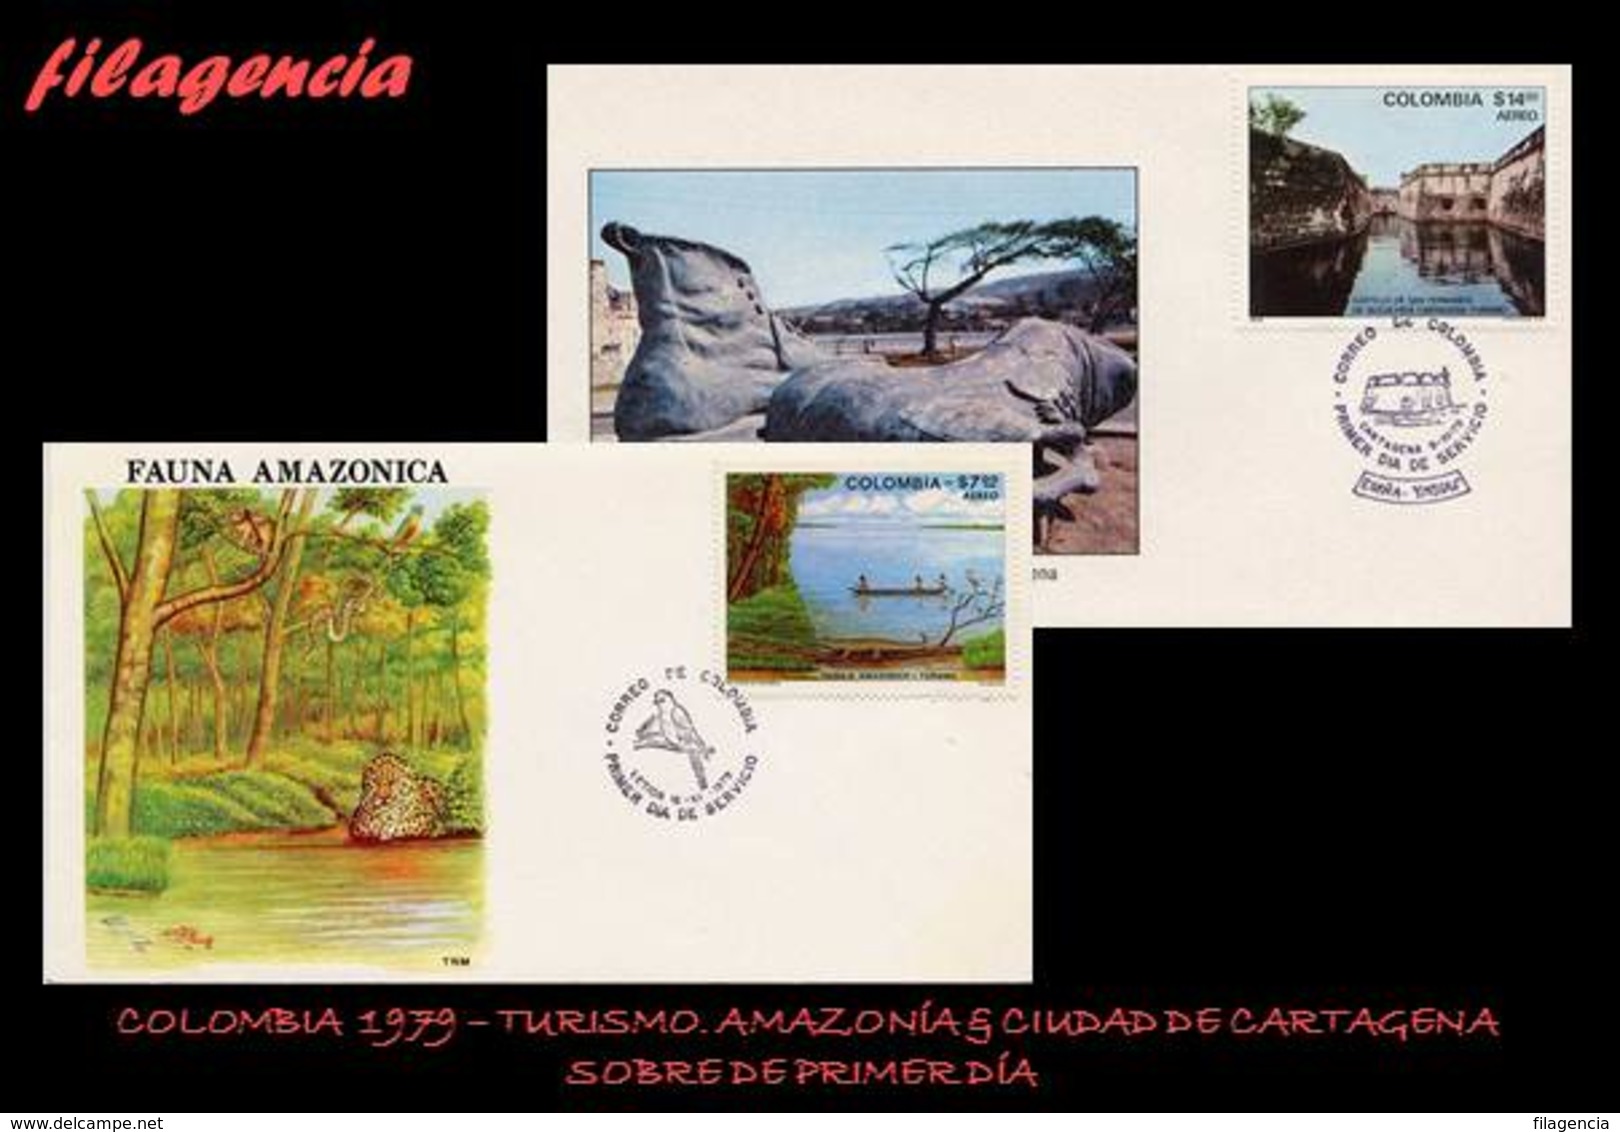 AMERICA. COLOMBIA SPD-FDC. 1979 TURISMO. AMAZONIA & CIUDAD DE CARTAGENA - Colombie